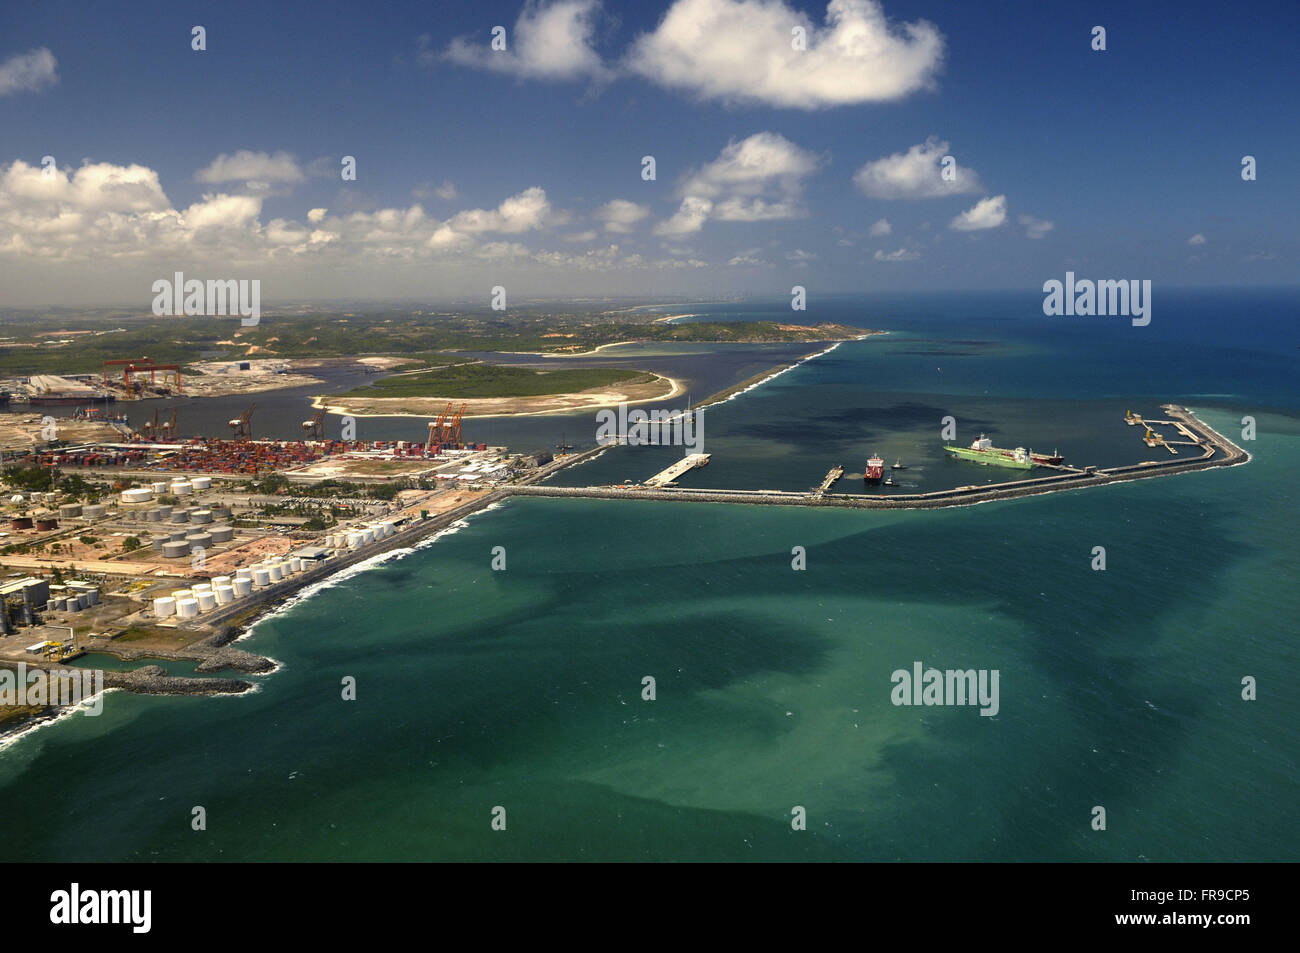 Aerial view of Port of Suape the bottom left Atlantico Sul Shipyard Stock Photo